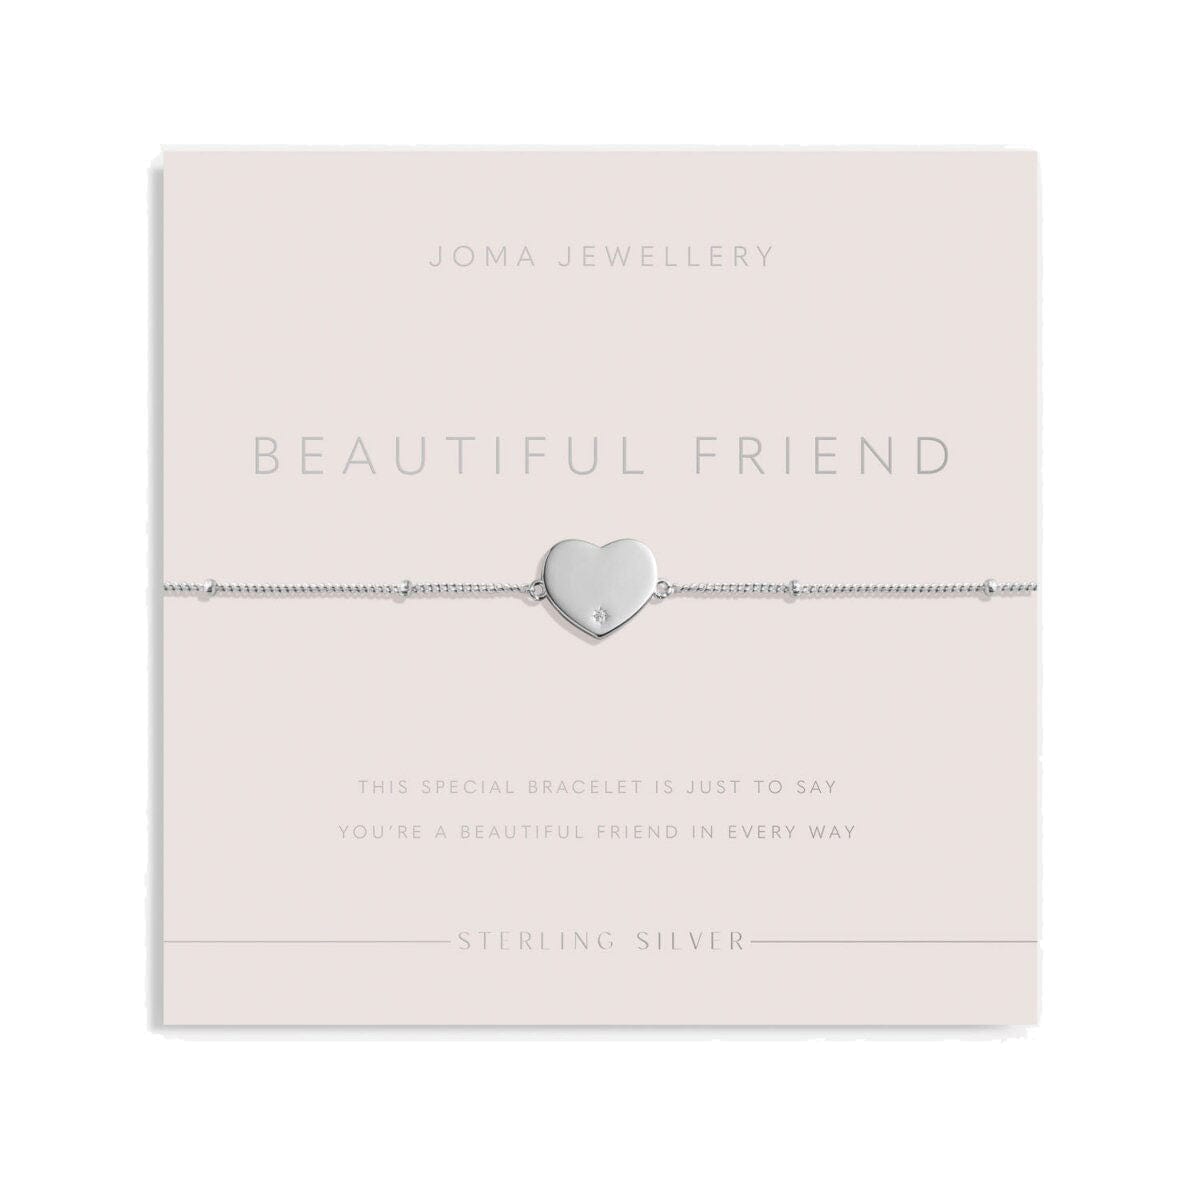 Joma Jewellery Bracelet Joma Jewellery Sterling Silver Bracelet - Beautiful Friend